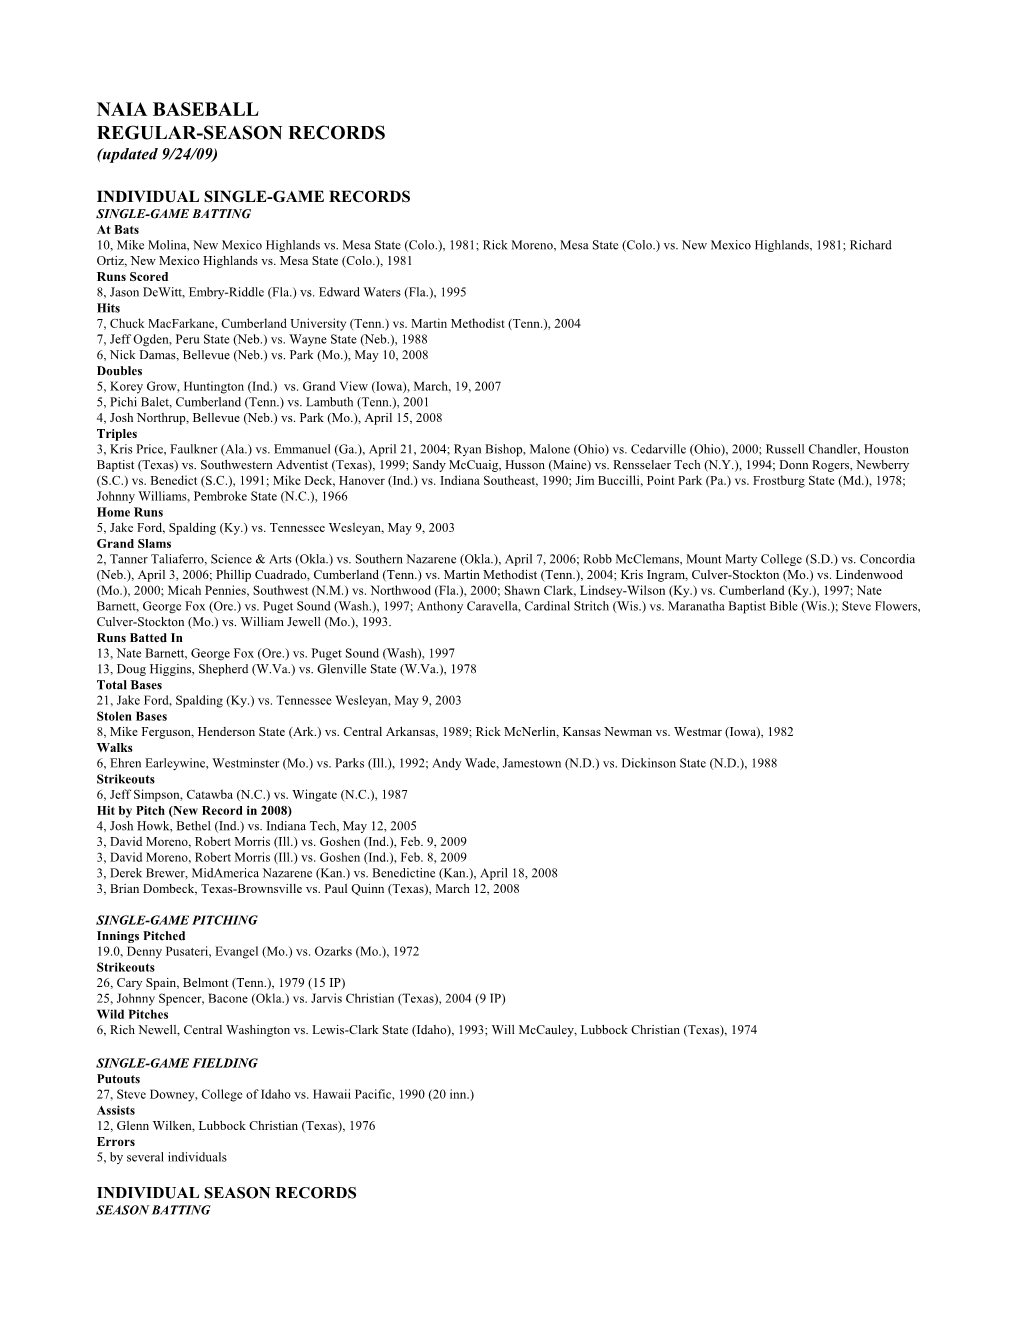 NAIA BASEBALL REGULAR-SEASON RECORDS (Updated 9/24/09)